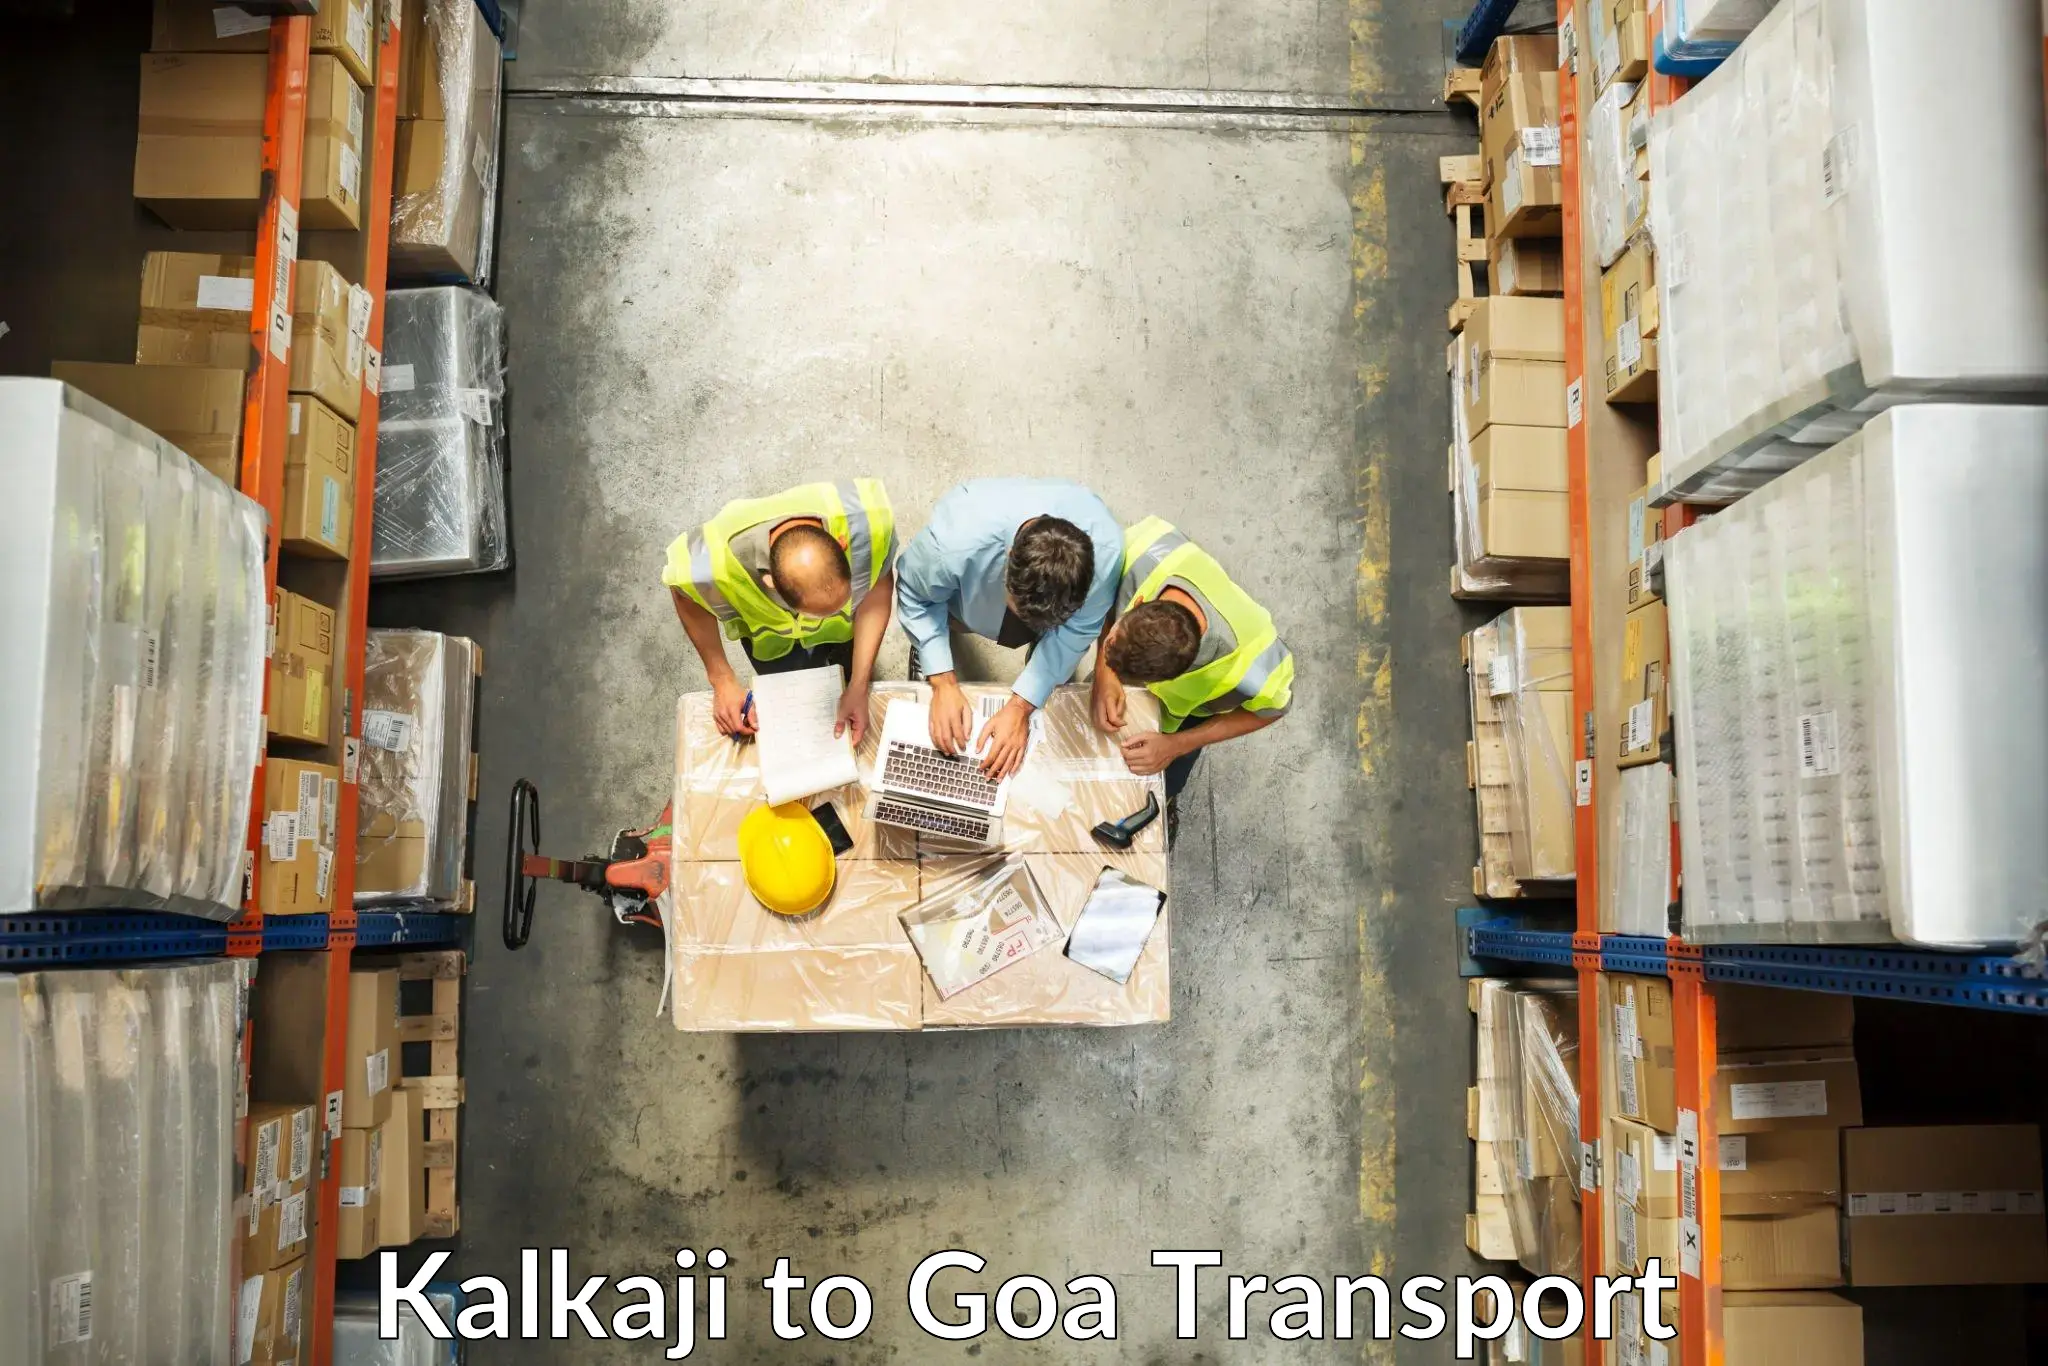 Road transport online services Kalkaji to IIT Goa